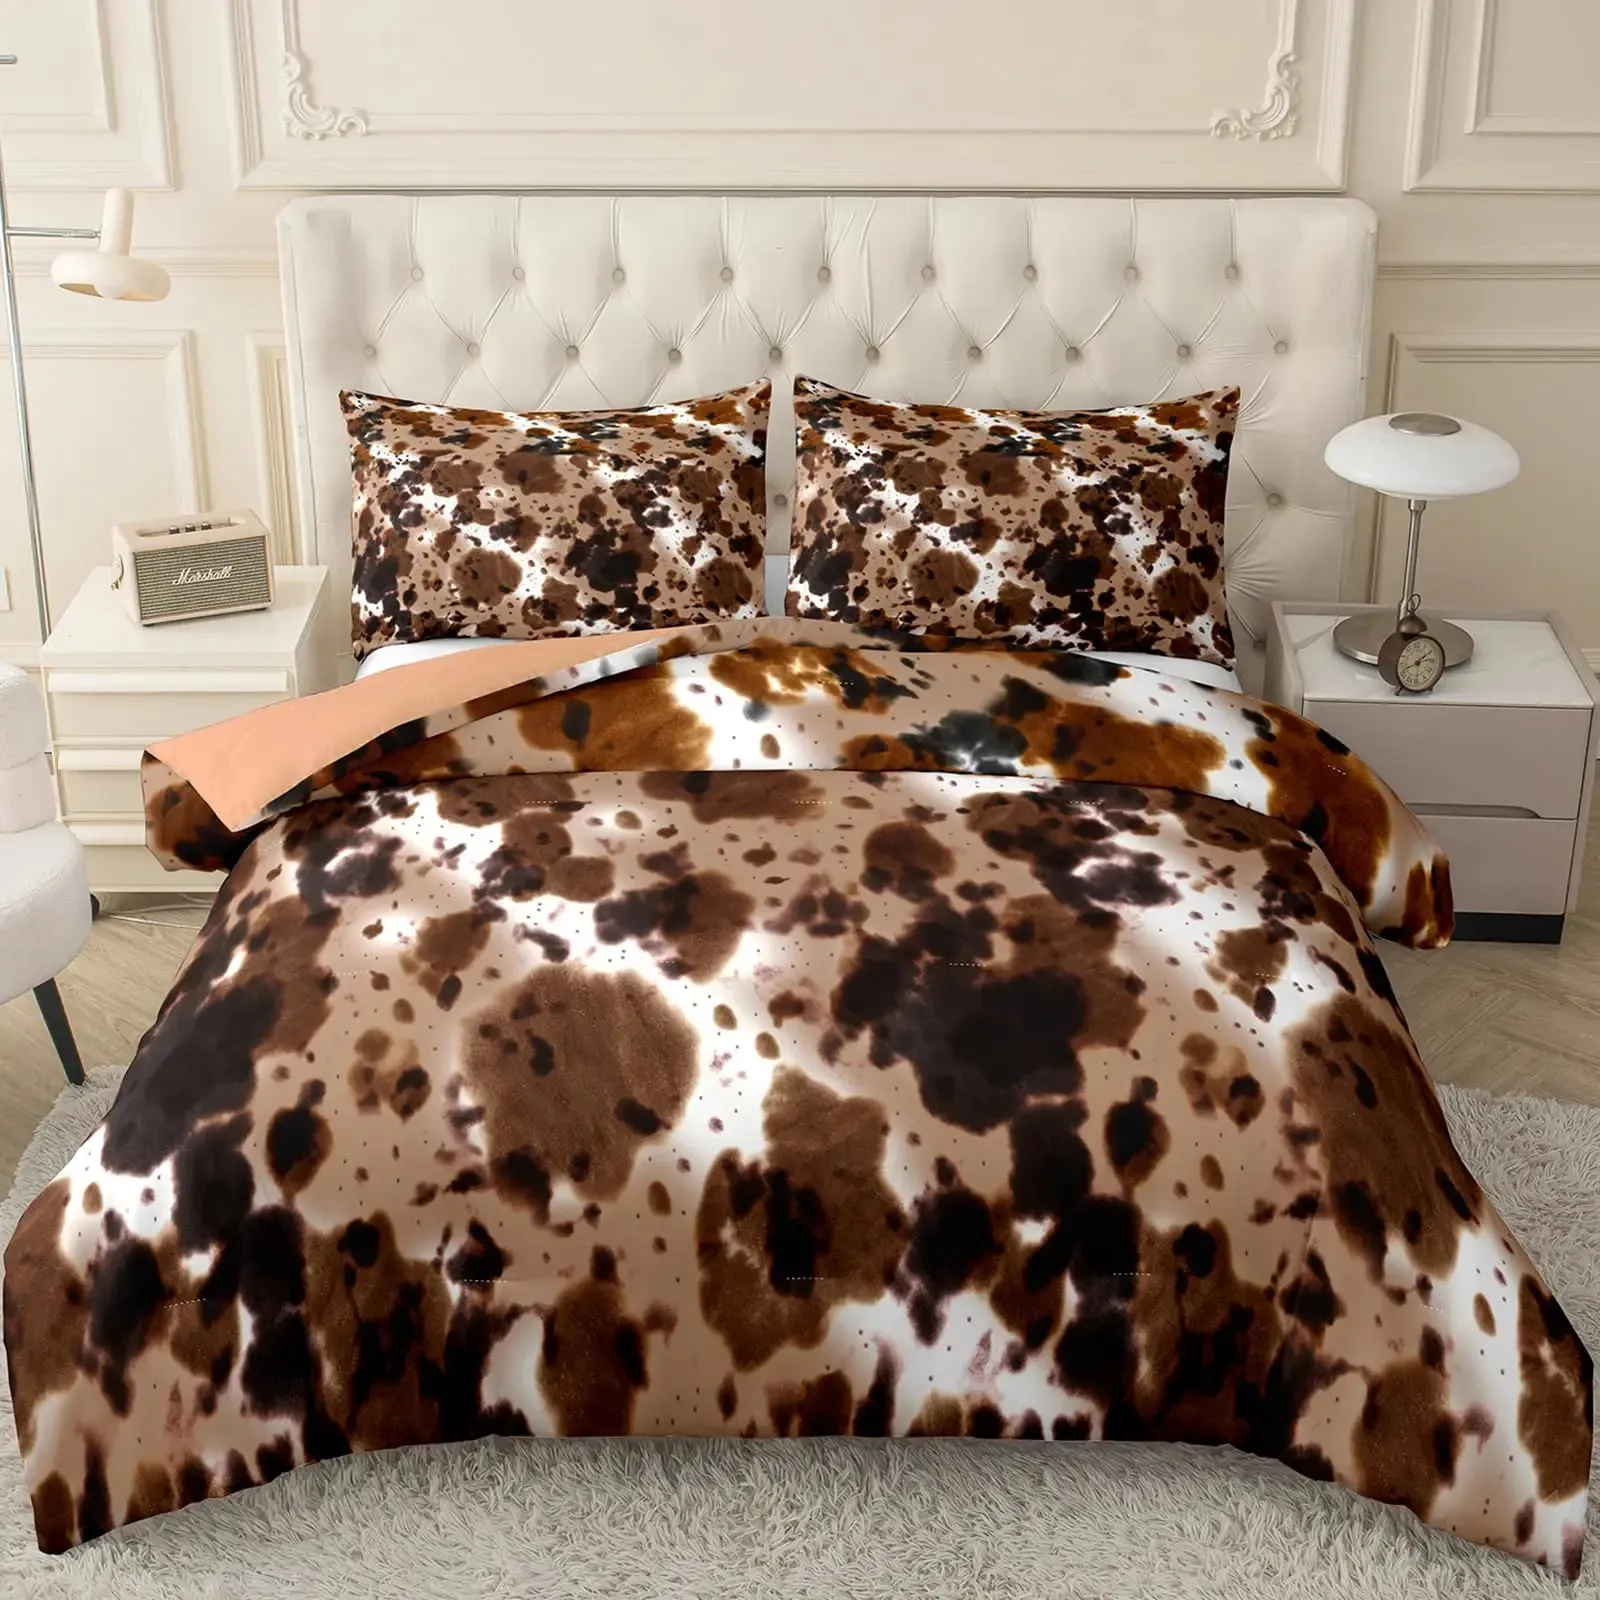 Коричневый комплект одеяла с принтом коровы, постельное белье для фермерского дома размера «queen-king-size» с 2 одинаковыми наволочками, украшение для спальни 240131